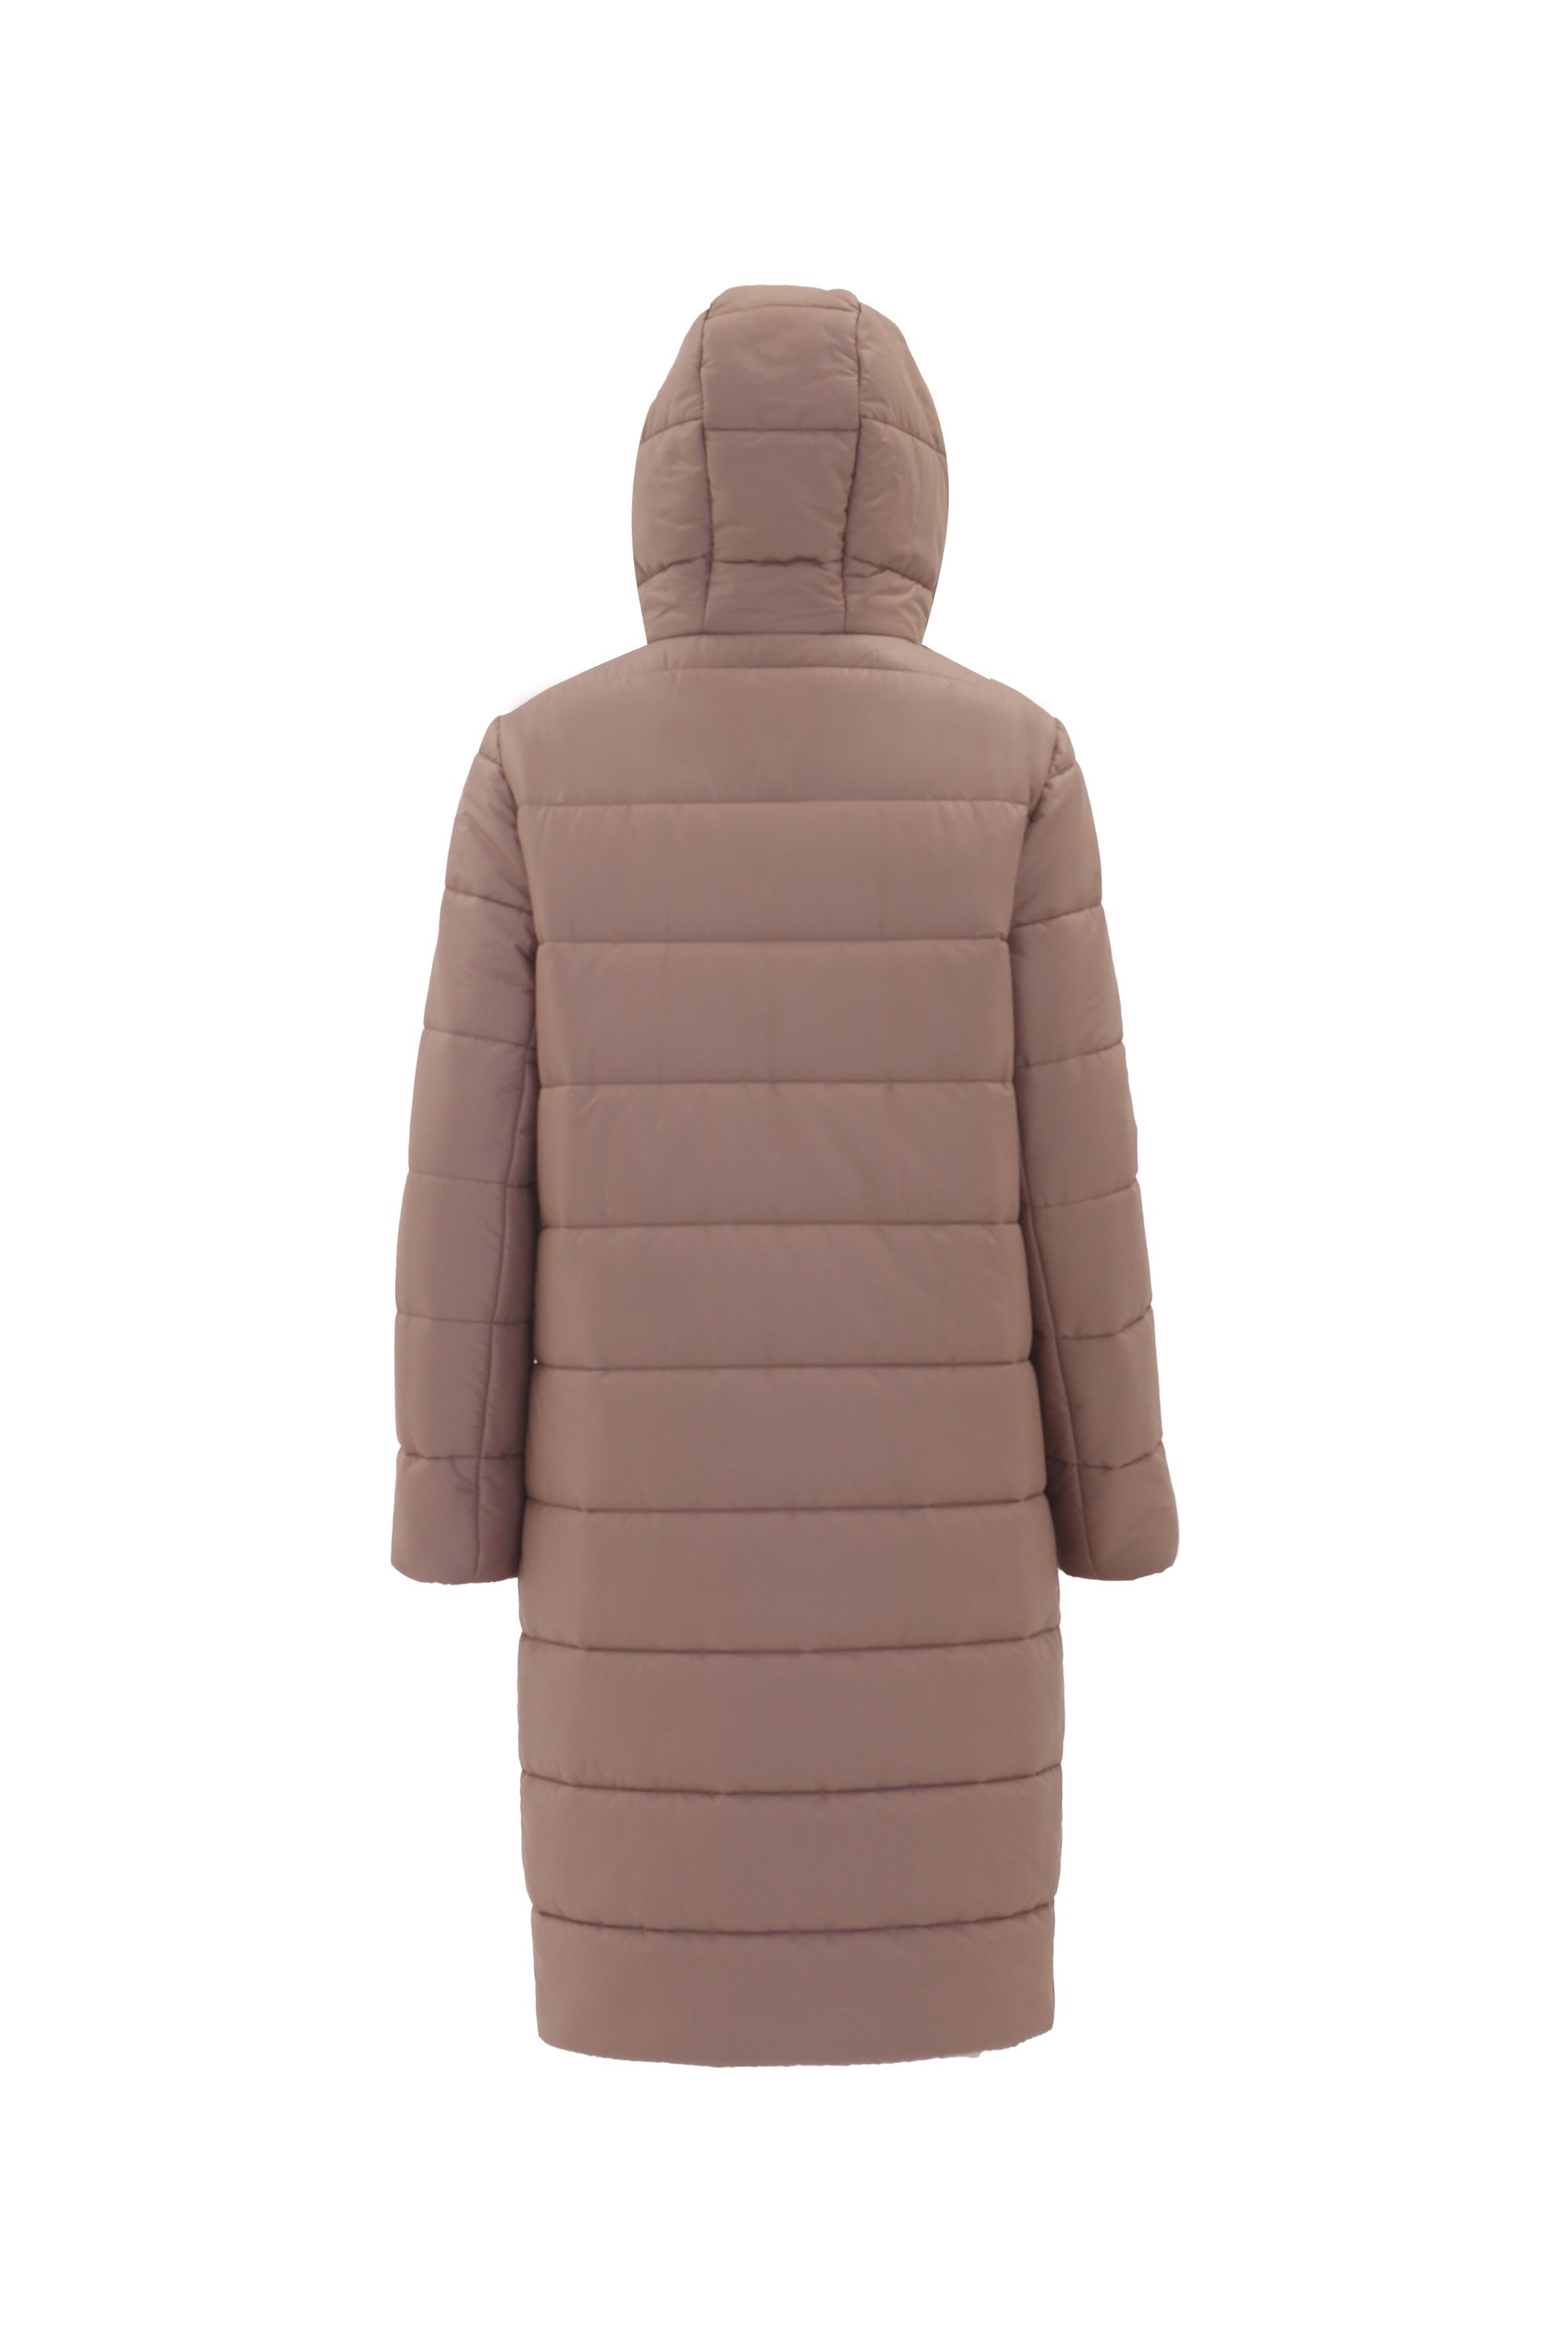 Пальто женское плащевое утепленное 5-12338-1. Фото 3.